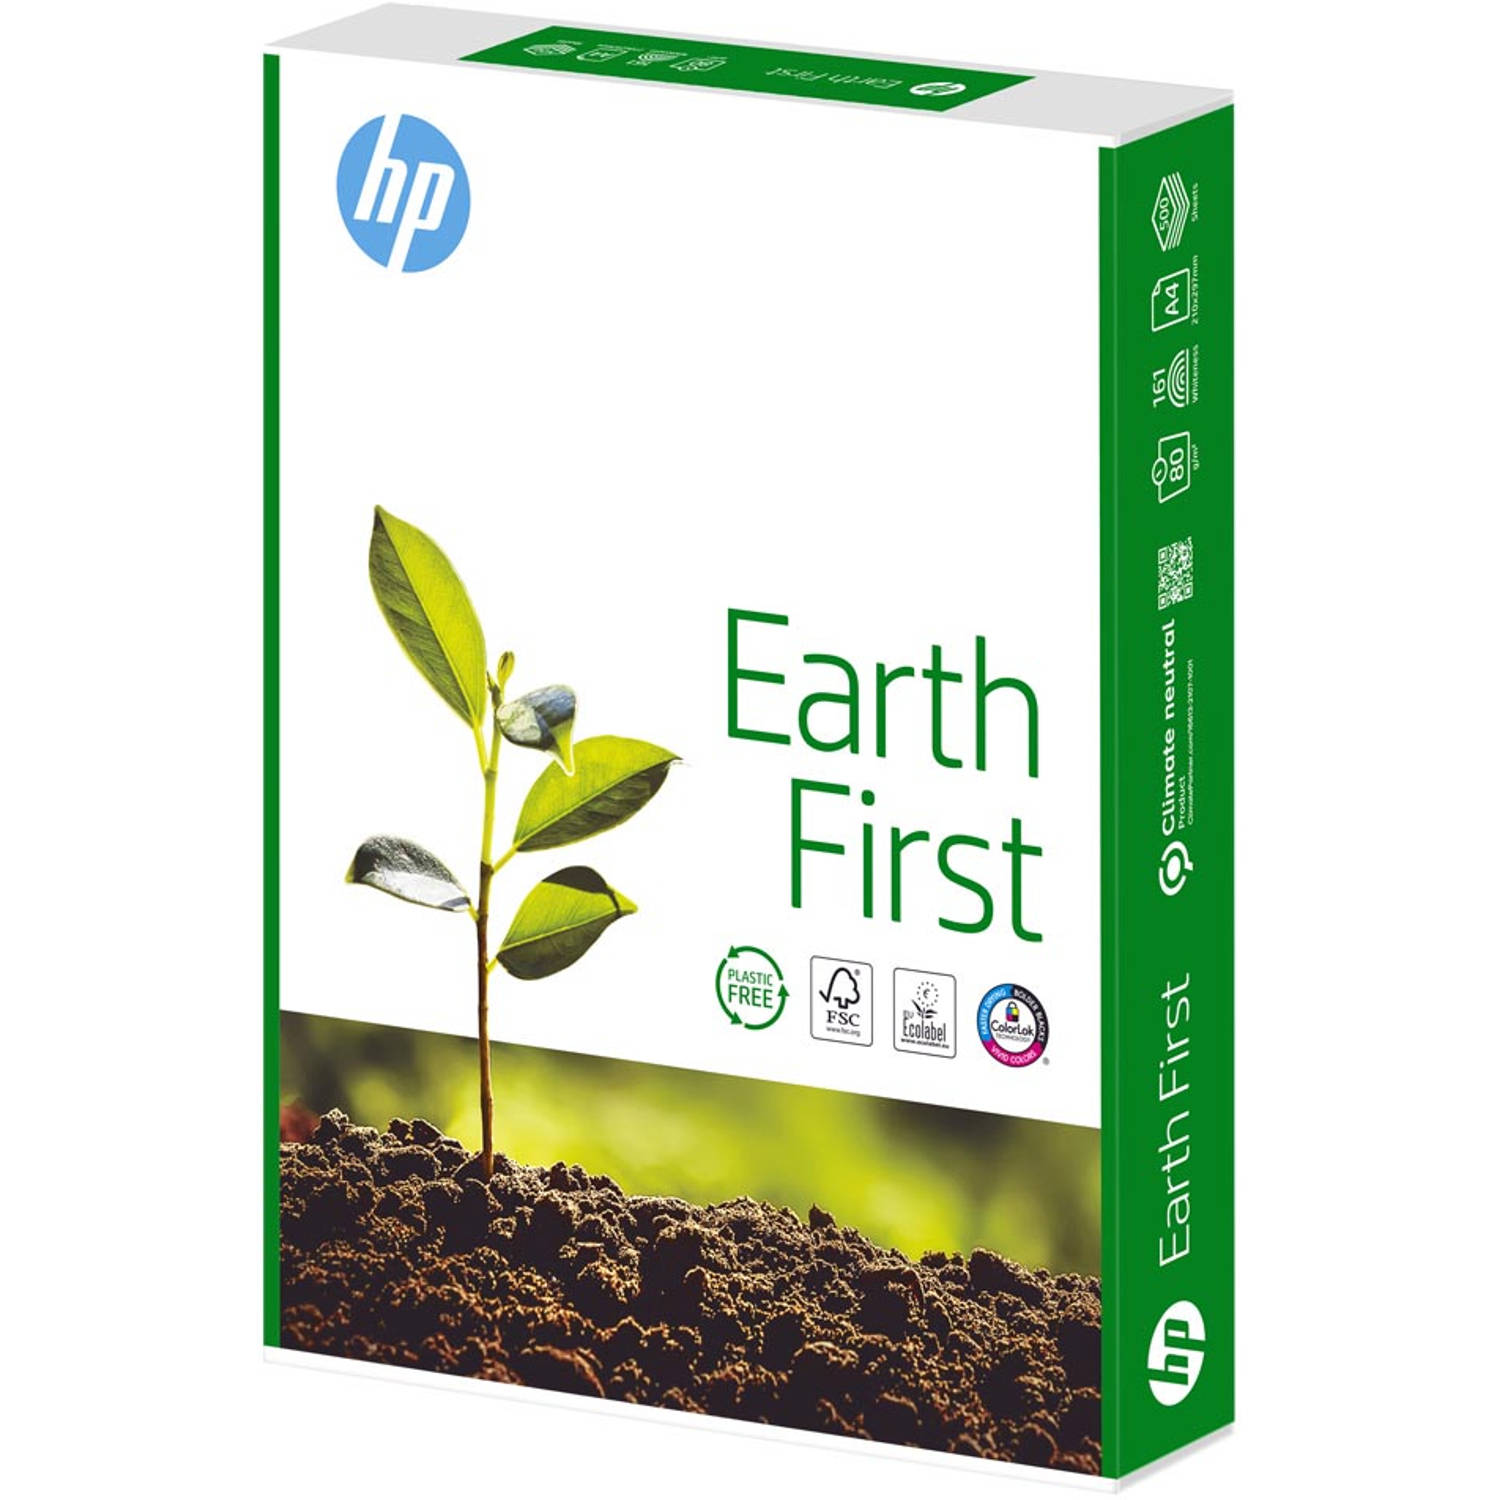 HP Earth First - kopieerpapier - A4 - 80gr wit - 2500 vel - 5 pakken